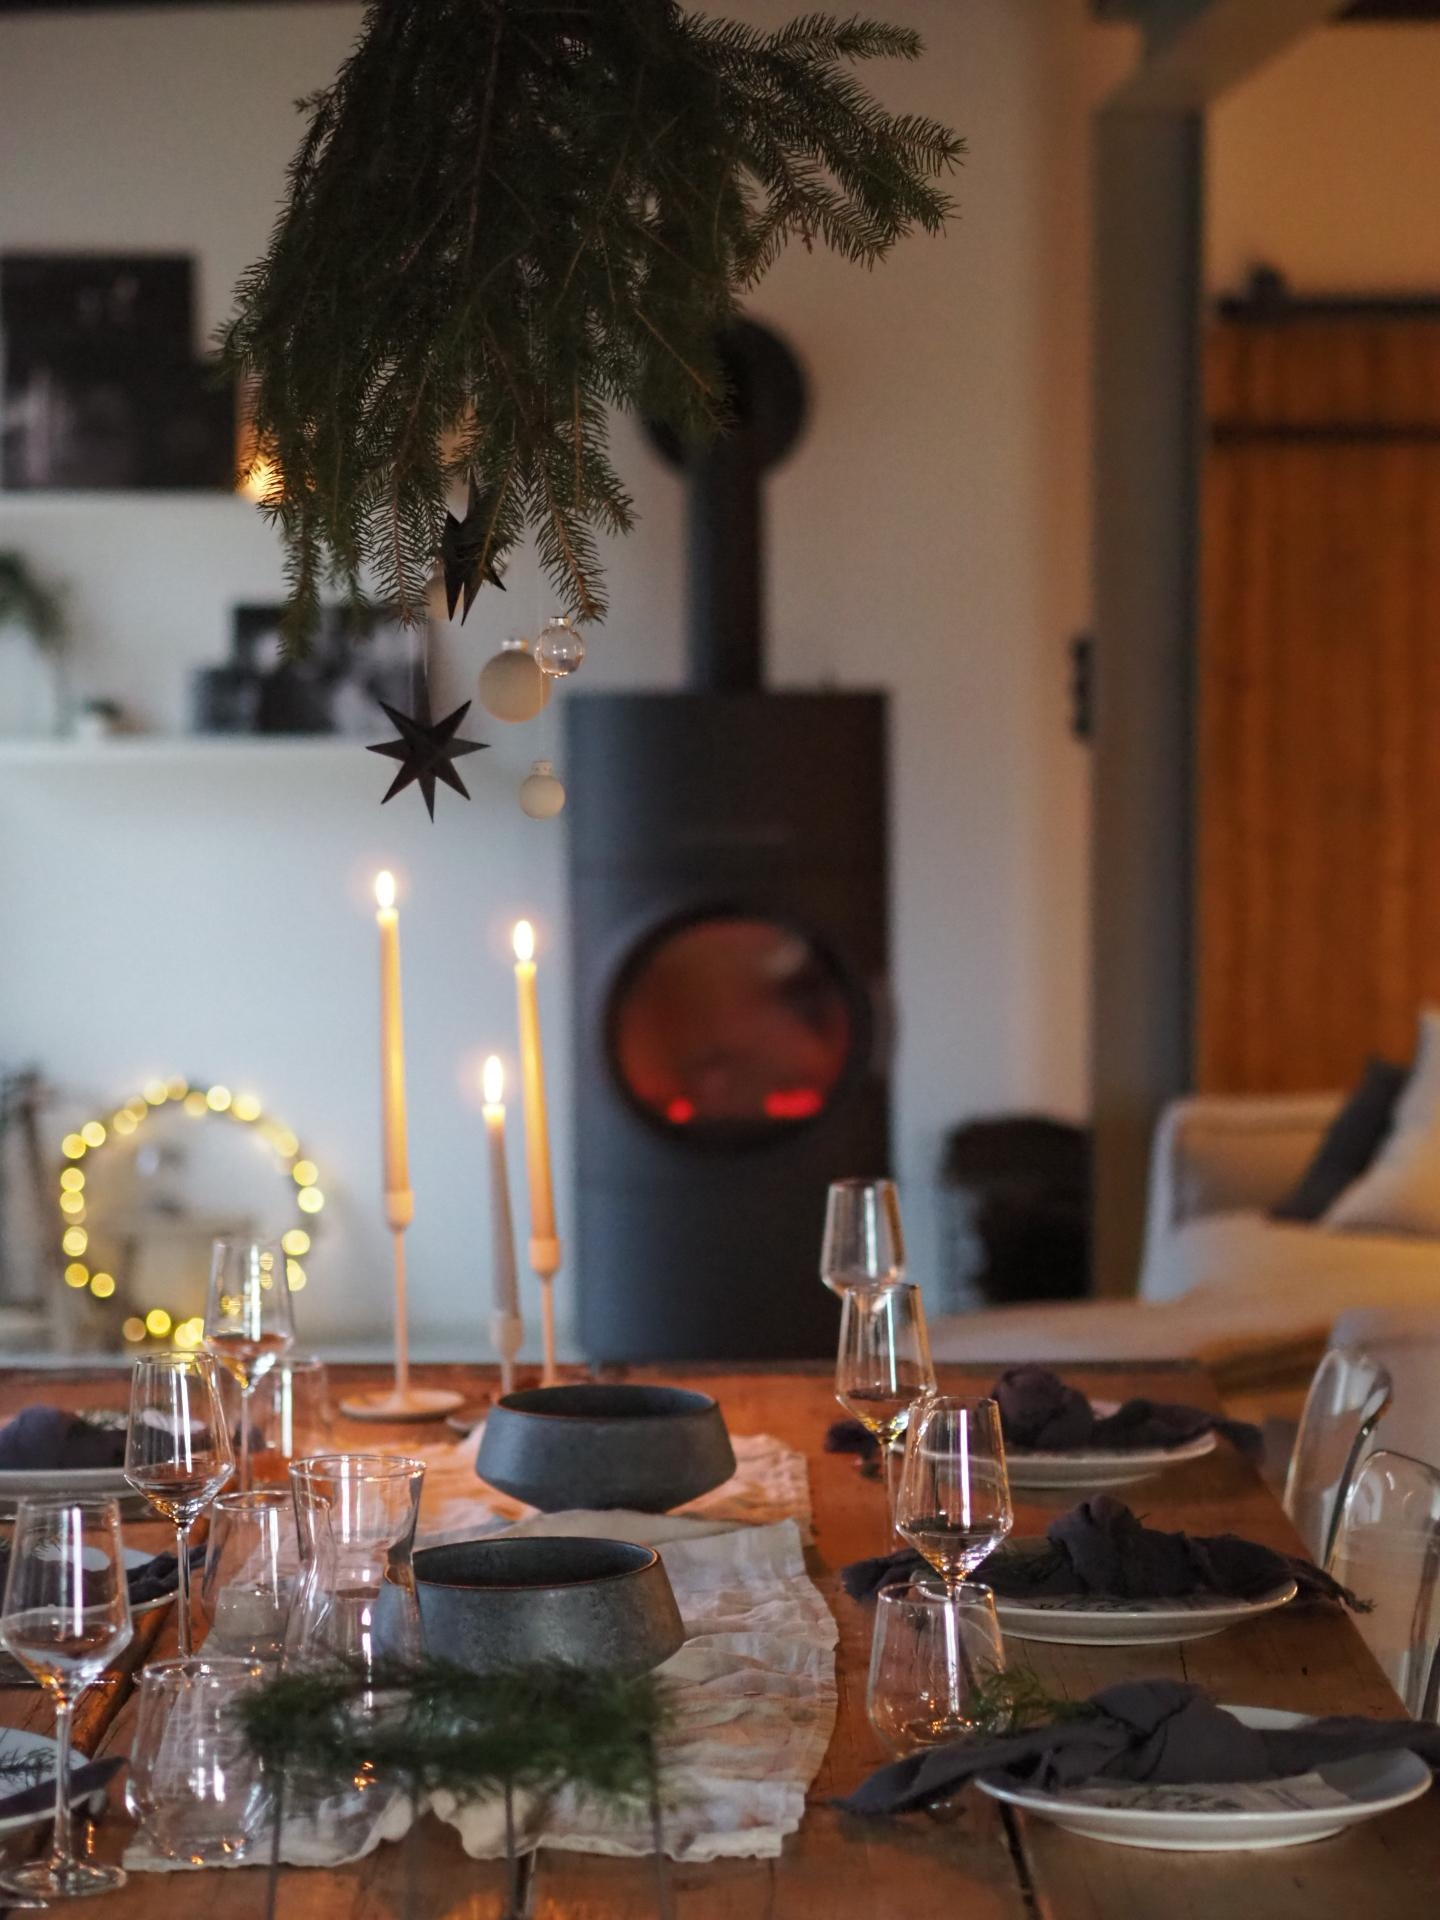 Vorfreude auf die Weihnachtszeit 🤍

#weihnachtszeit #gedecktertisch #wohnzimmer #esstisch #esszimmer #diy #interior